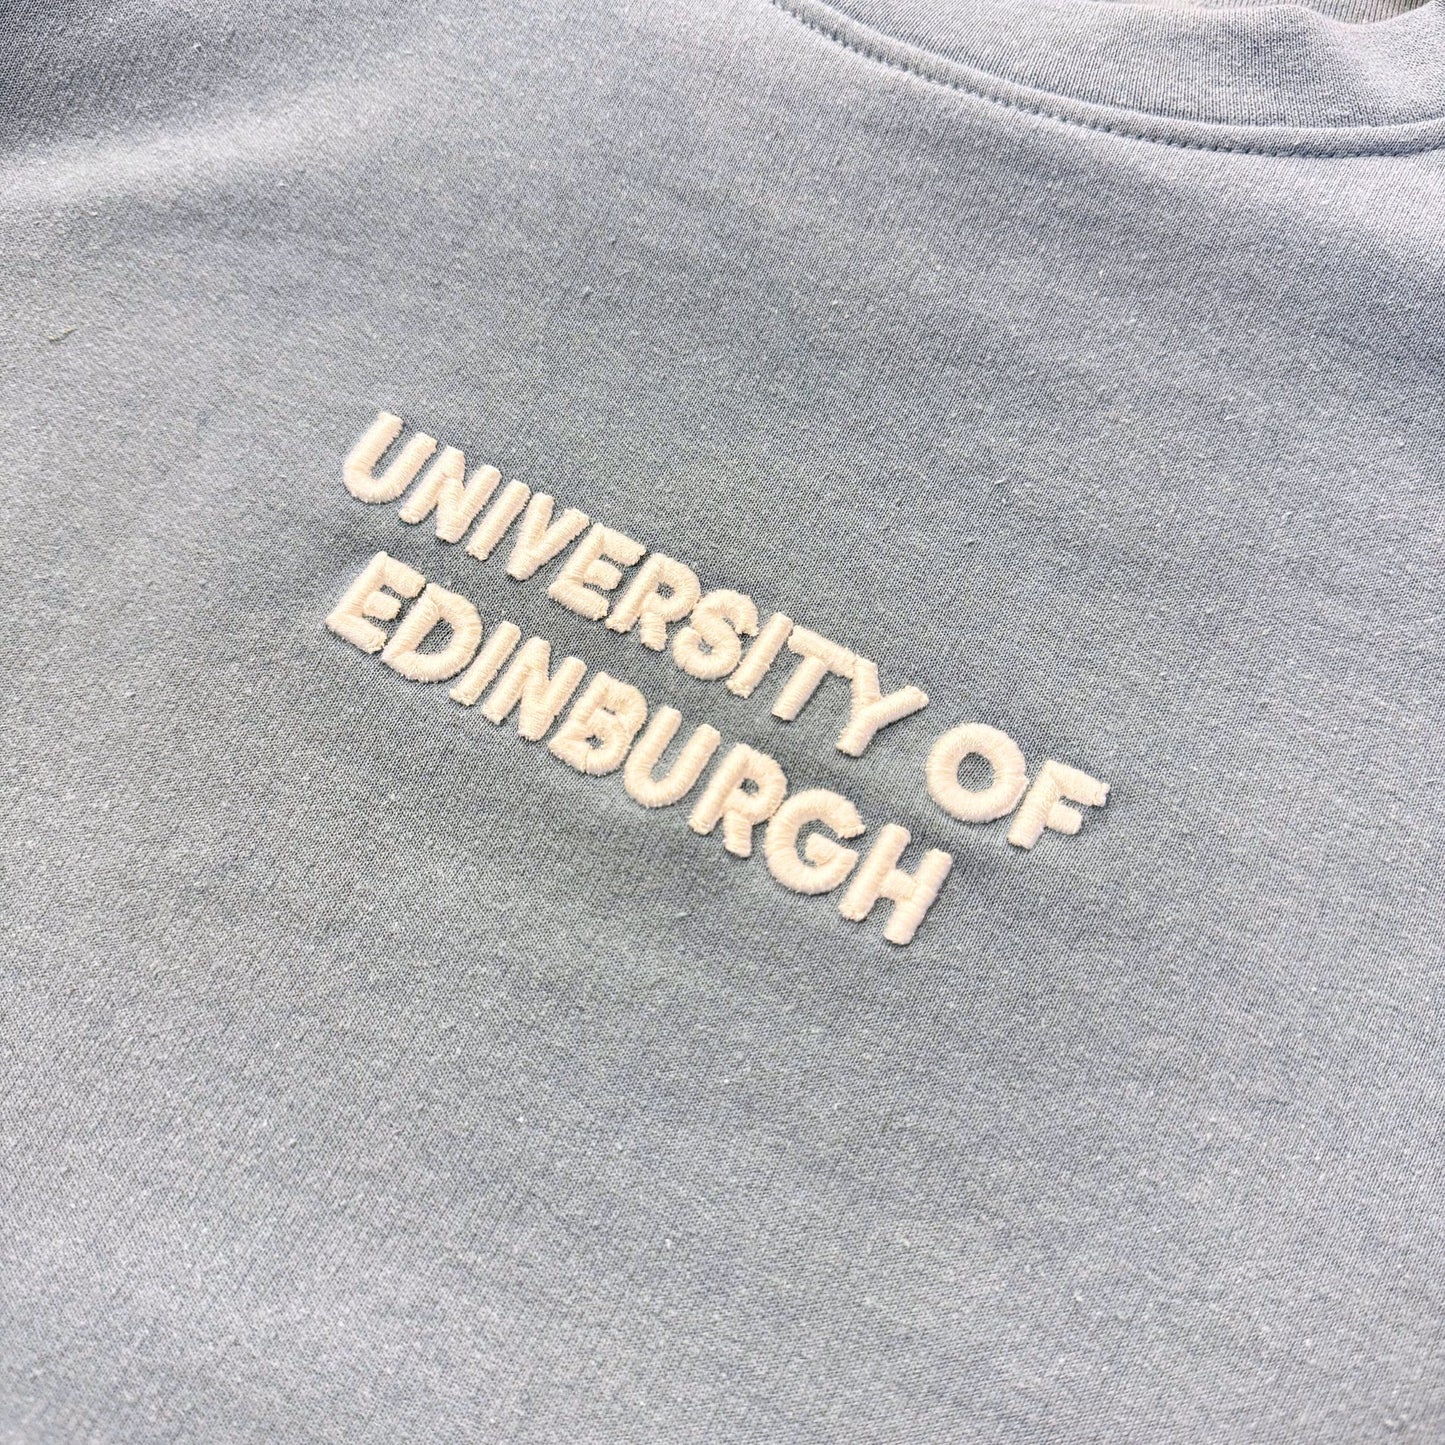 Embroidered University Sweatshirt